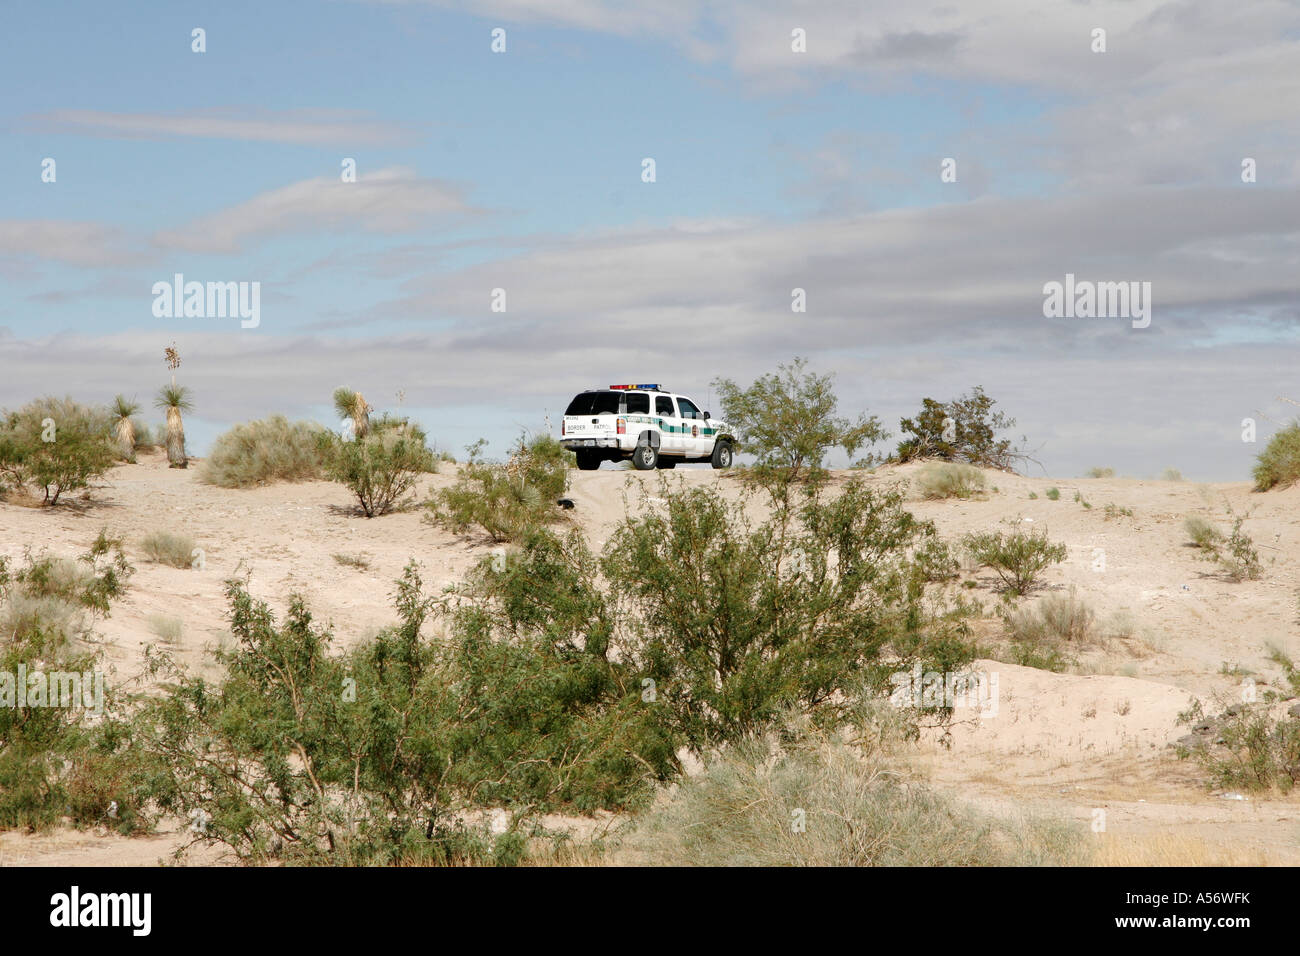 Painet ja0978 Usa Grenze Patrouille Fahrzeug bewachten Grenze zu verhindern, dass illegale Einwanderer überqueren Cuidad Juarez El Paso Stockfoto